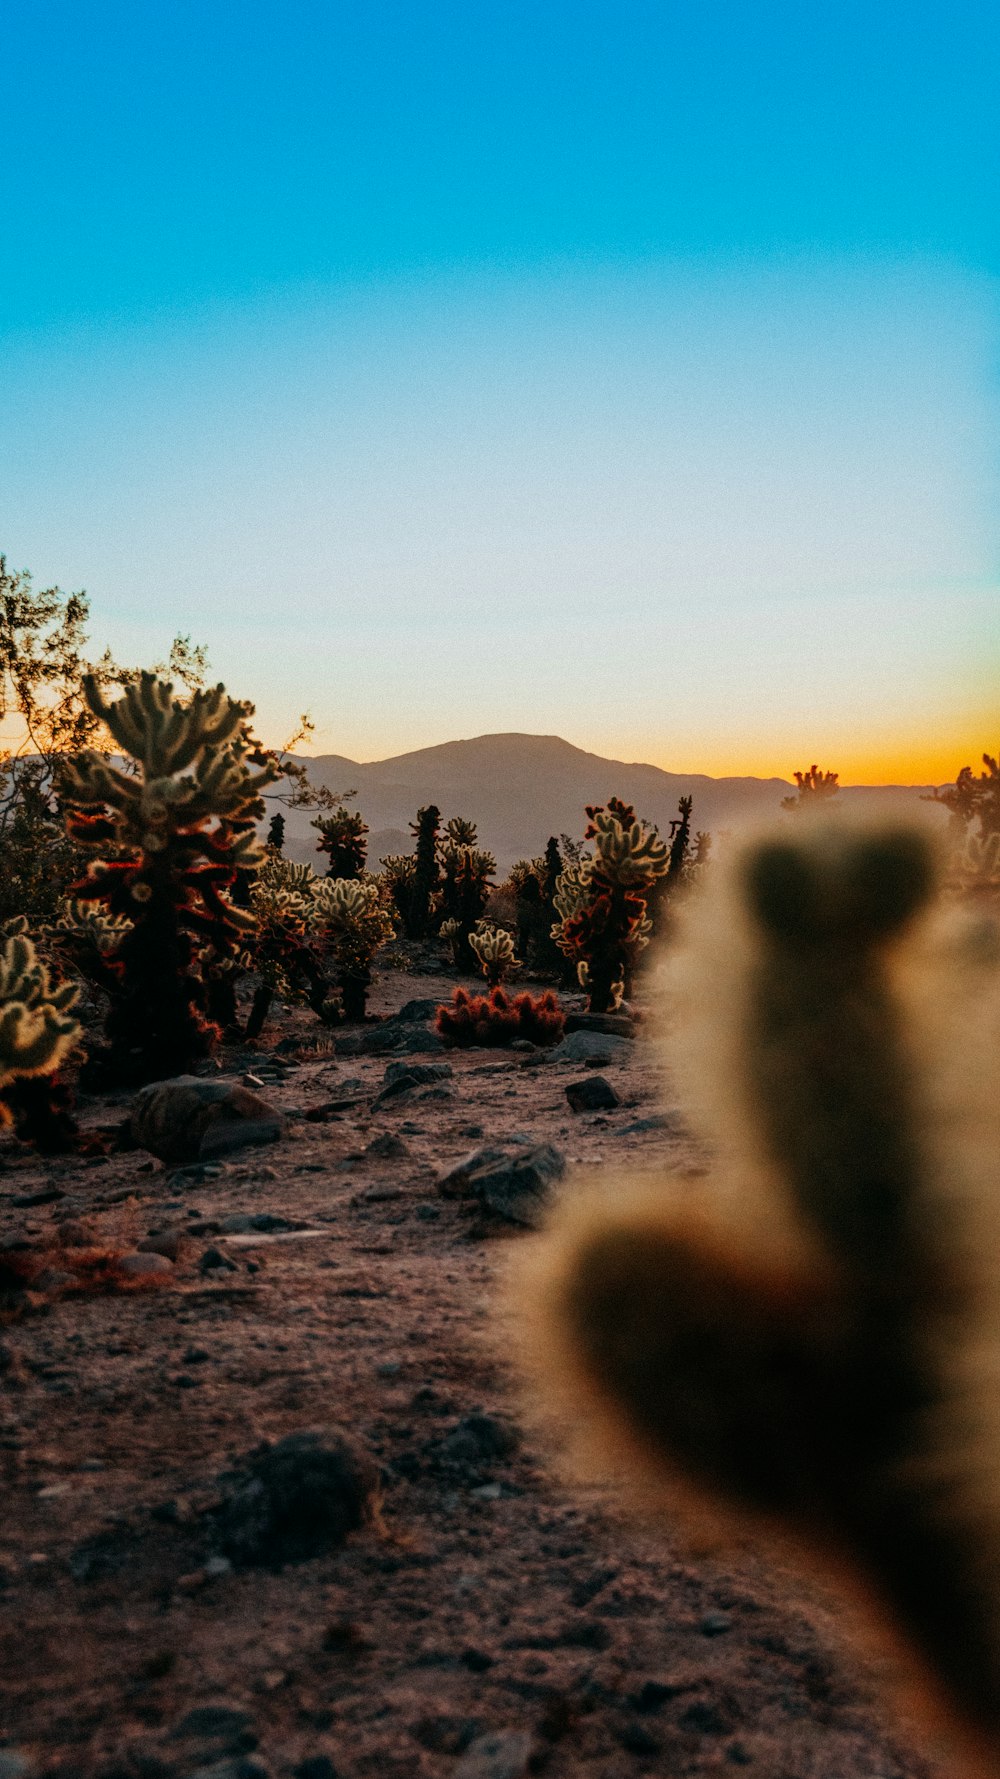 Un cactus en primer plano con montañas al fondo